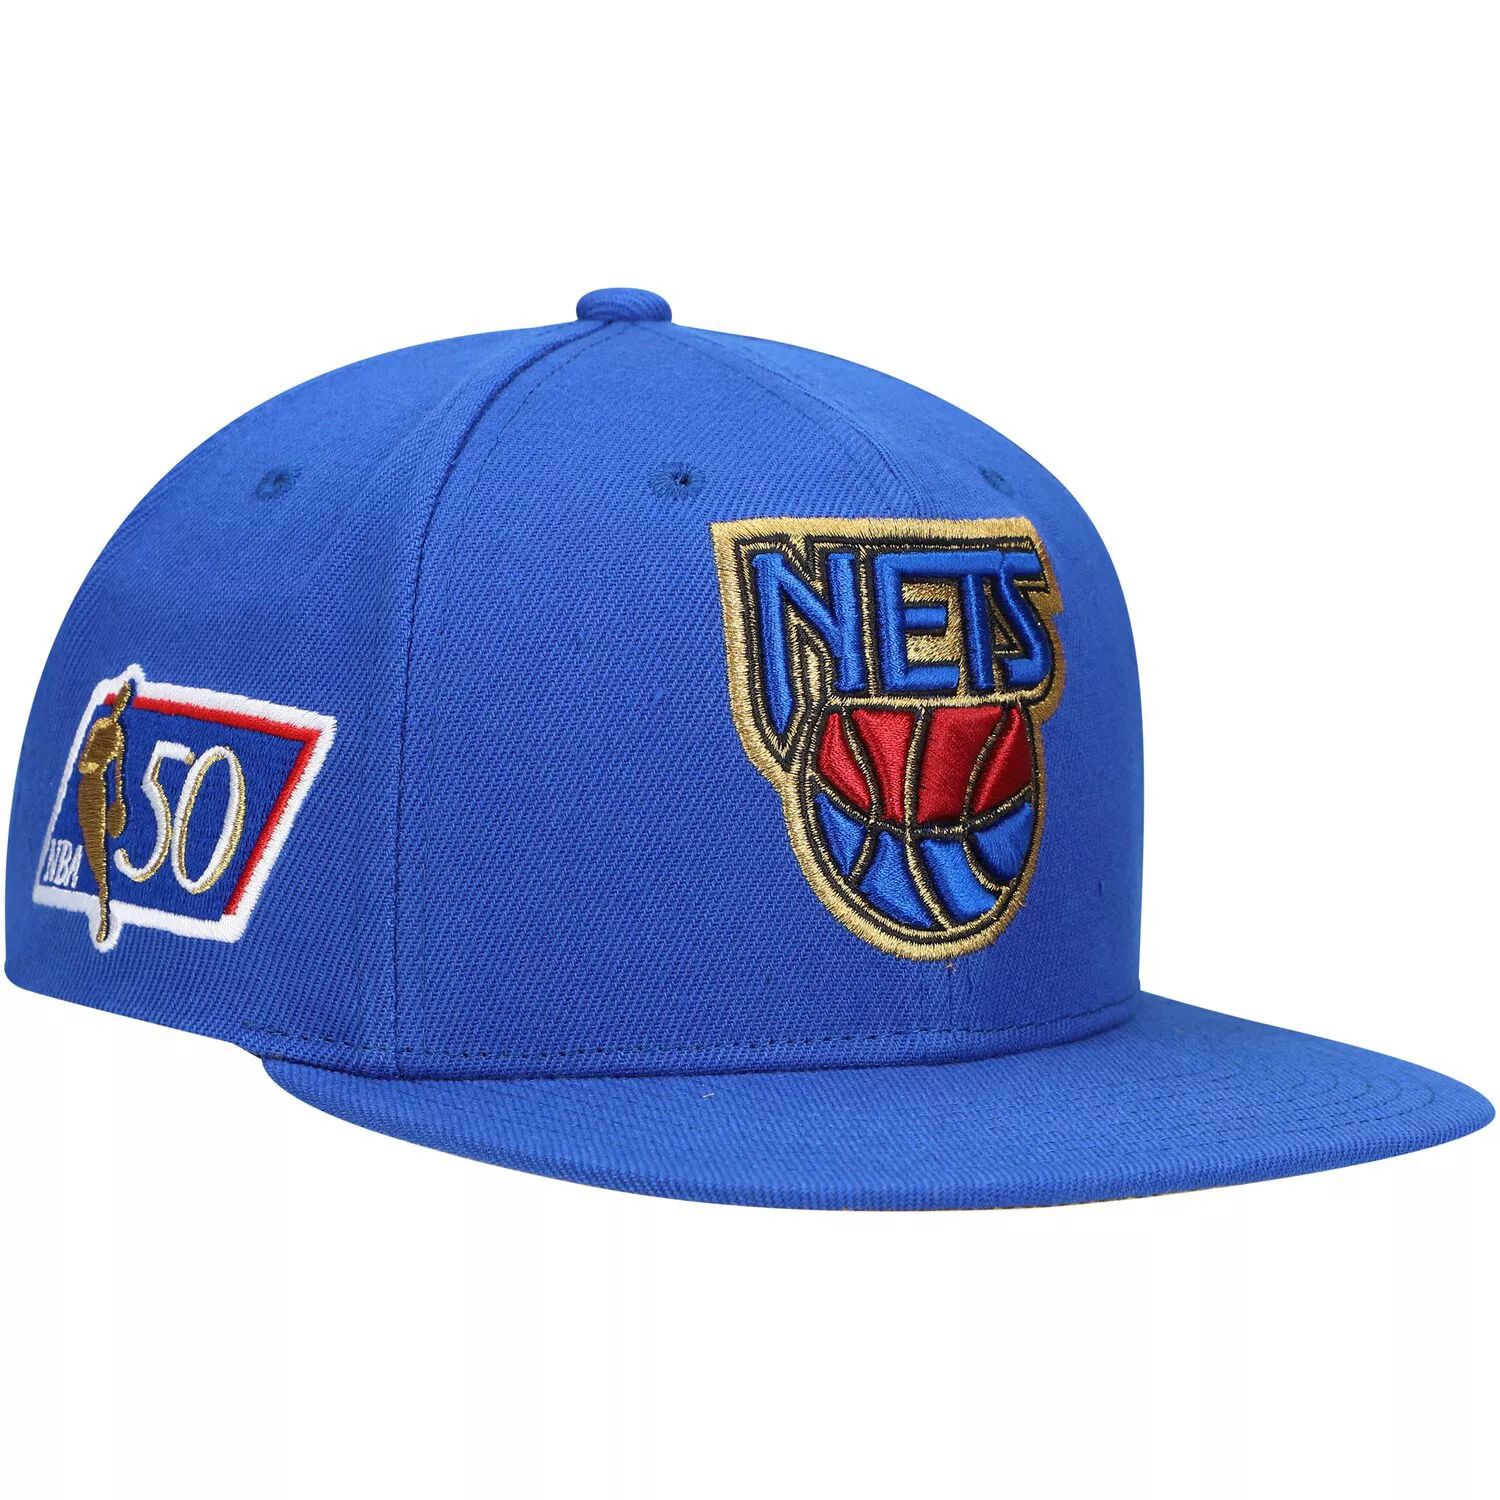 Мужская кепка Snapback к 50-летнему юбилею Mitchell & Ness Blue New Jersey Nets